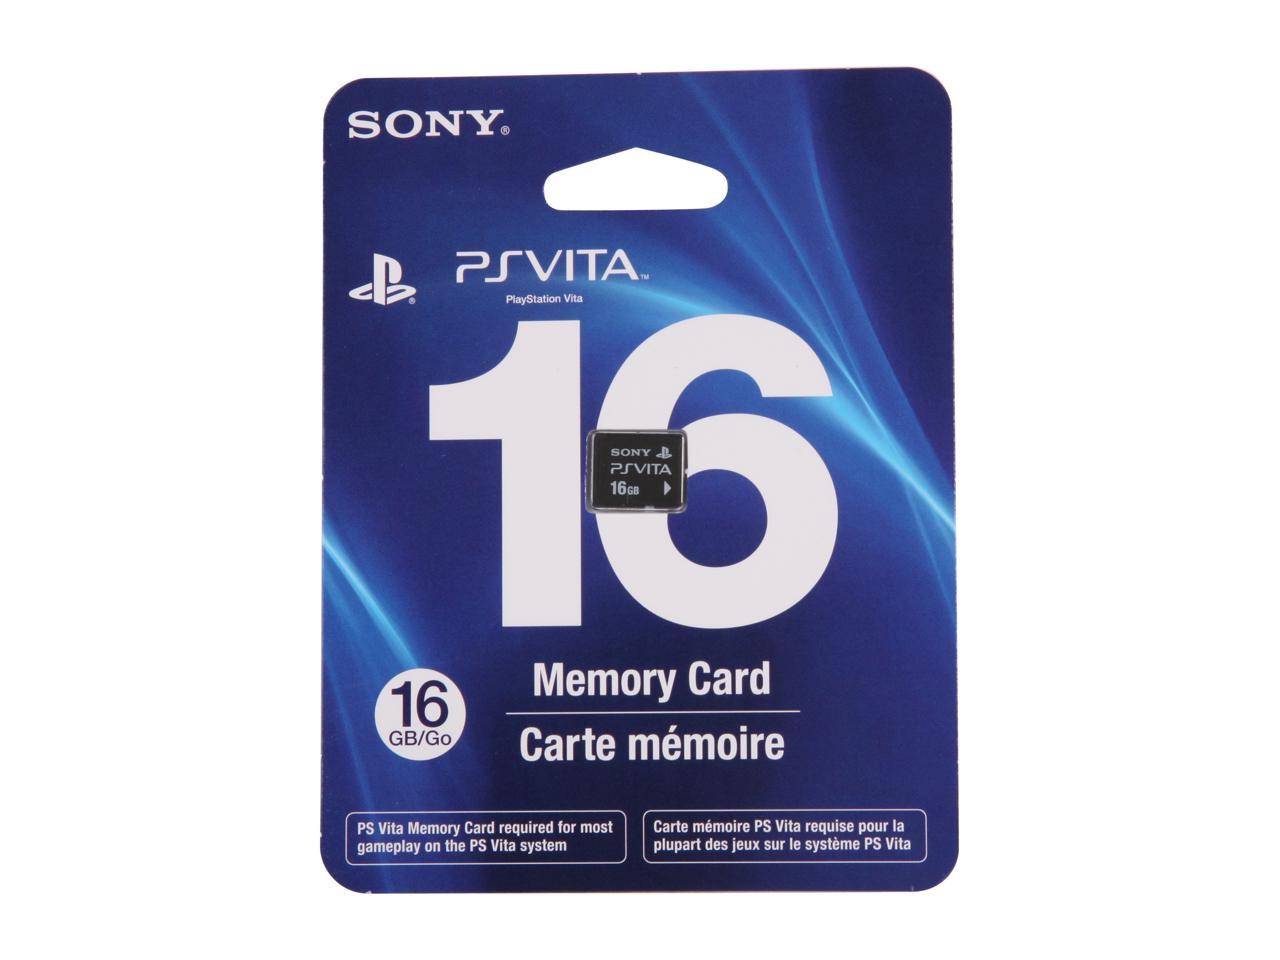 Vita memory card